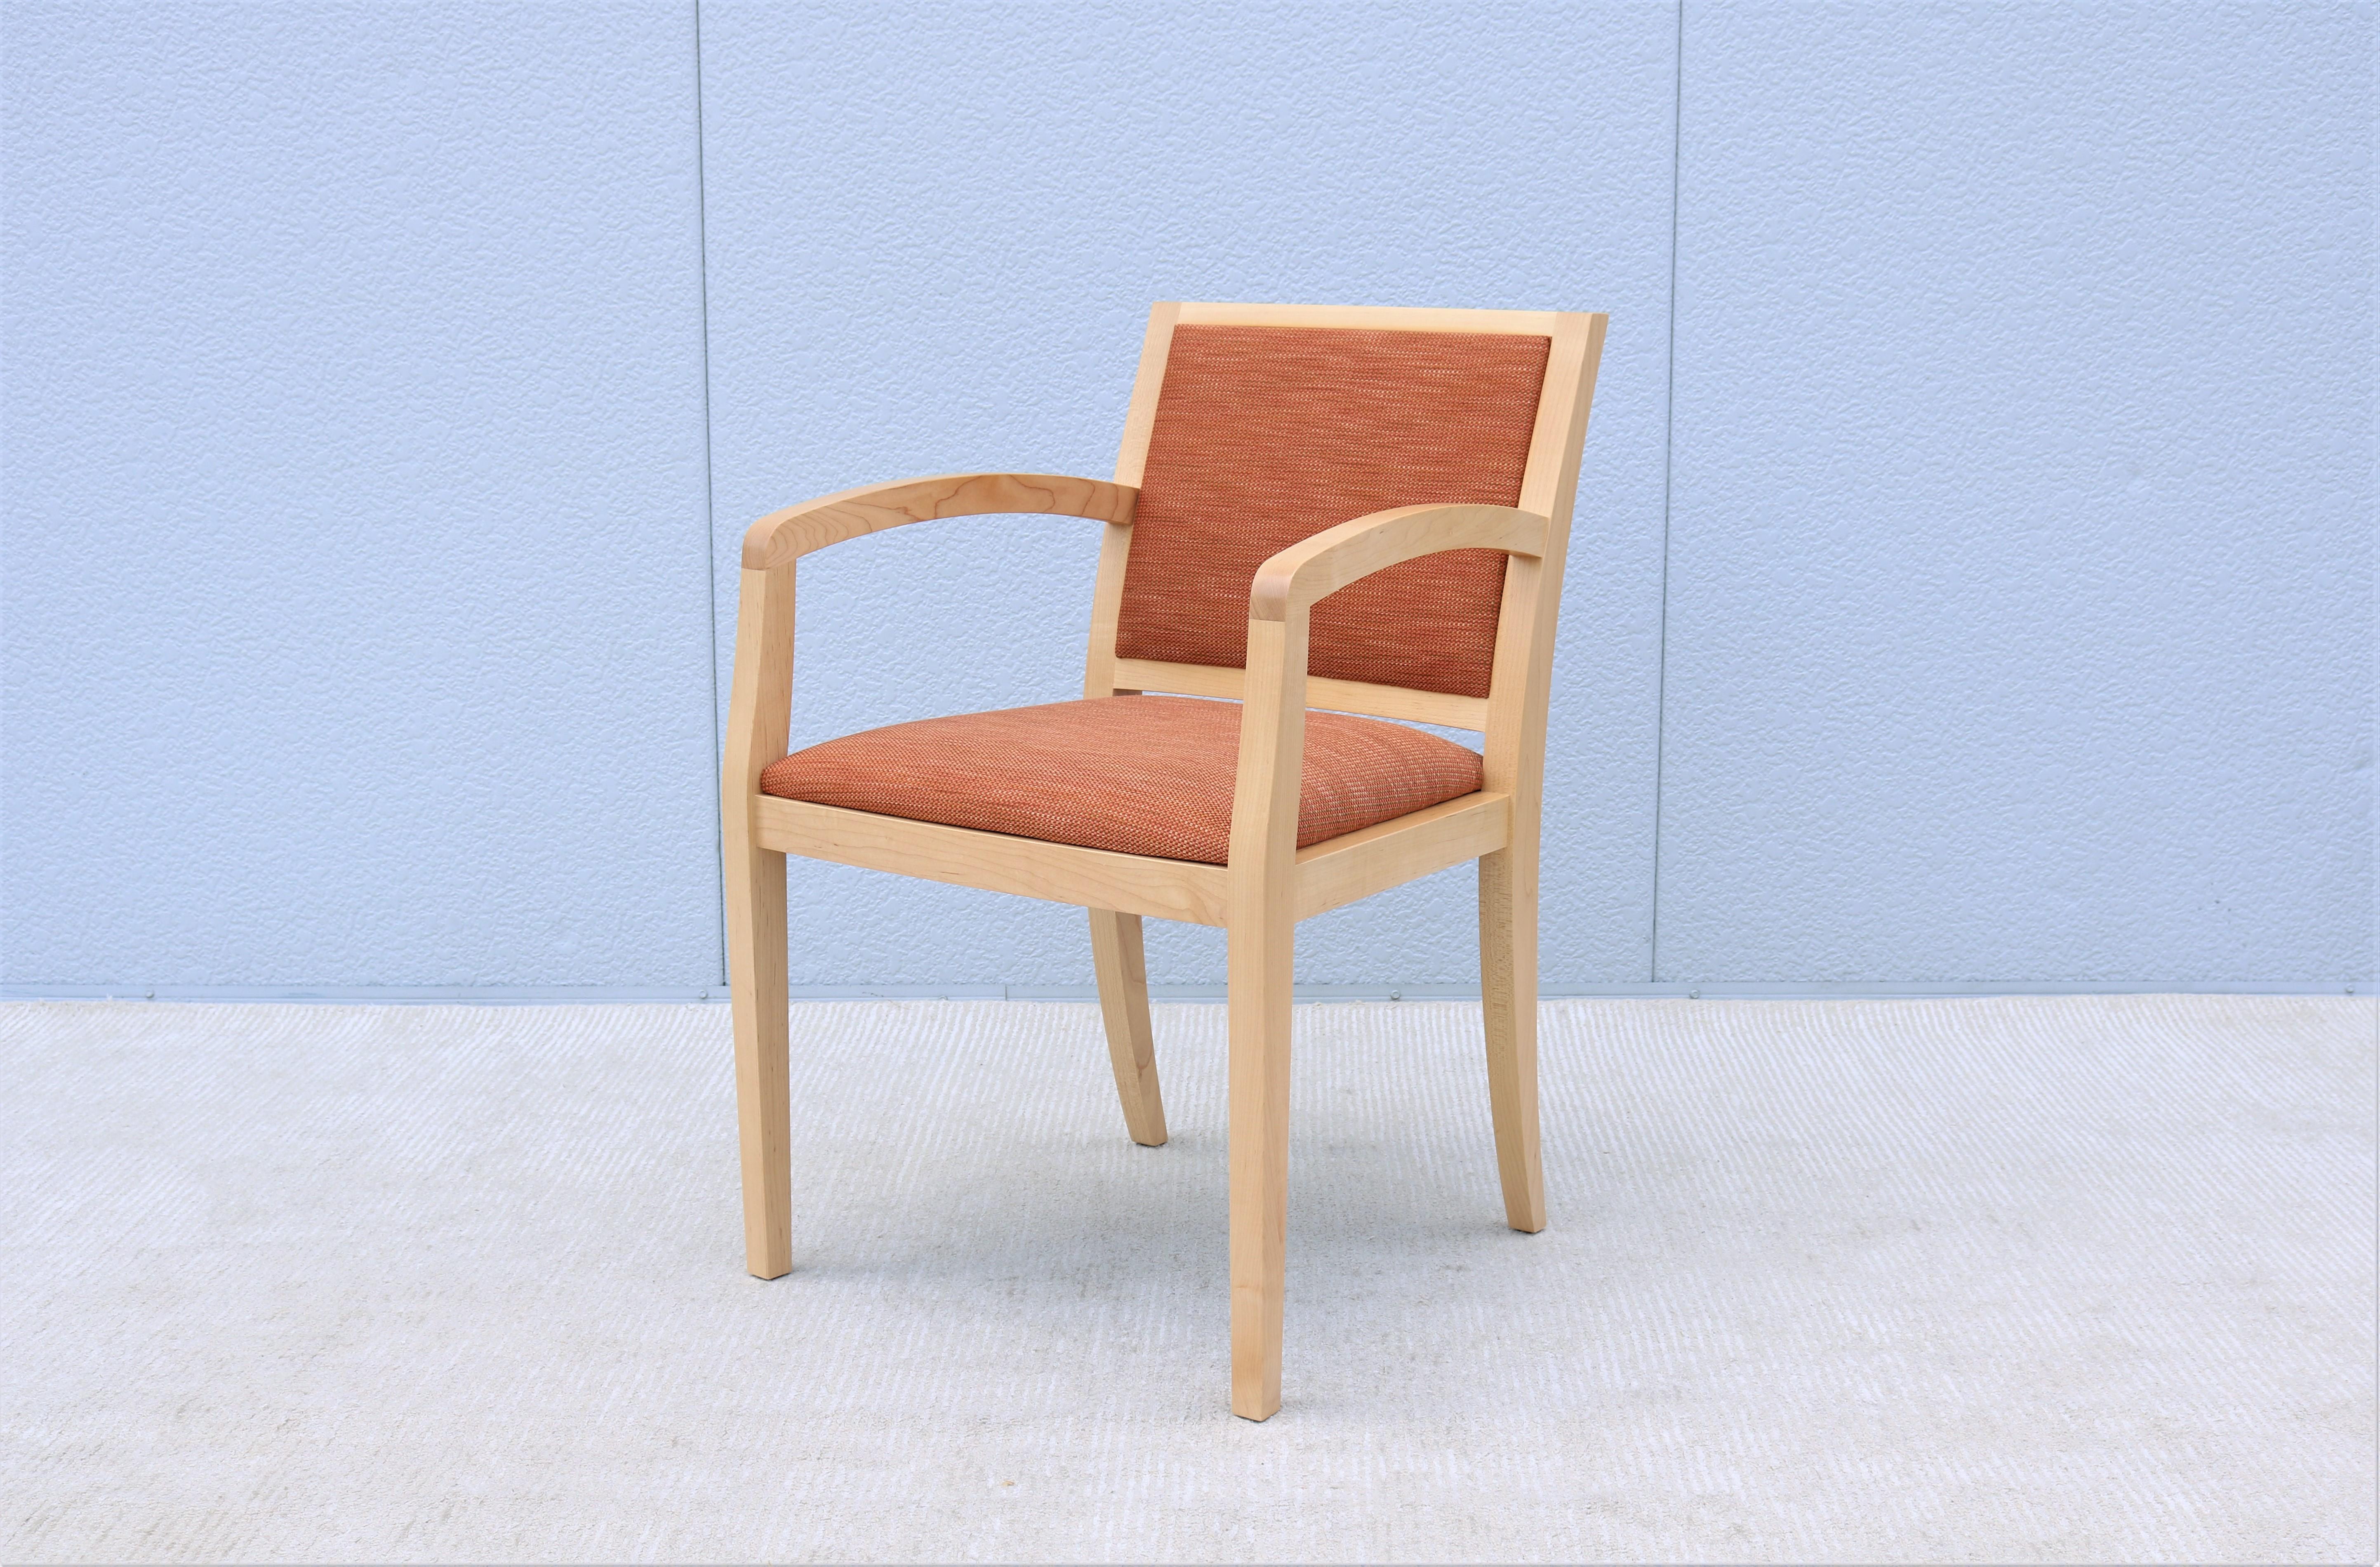 Der Collegeville Holzstuhl von Geiger ist elegant und verbindet Vergangenheit und Gegenwart.
Dieser fabelhafte, geradlinige Stuhl ist sowohl für den privaten als auch für den gewerblichen Gebrauch geeignet. 
Sehr vielseitig einsetzbar, als Ess-,